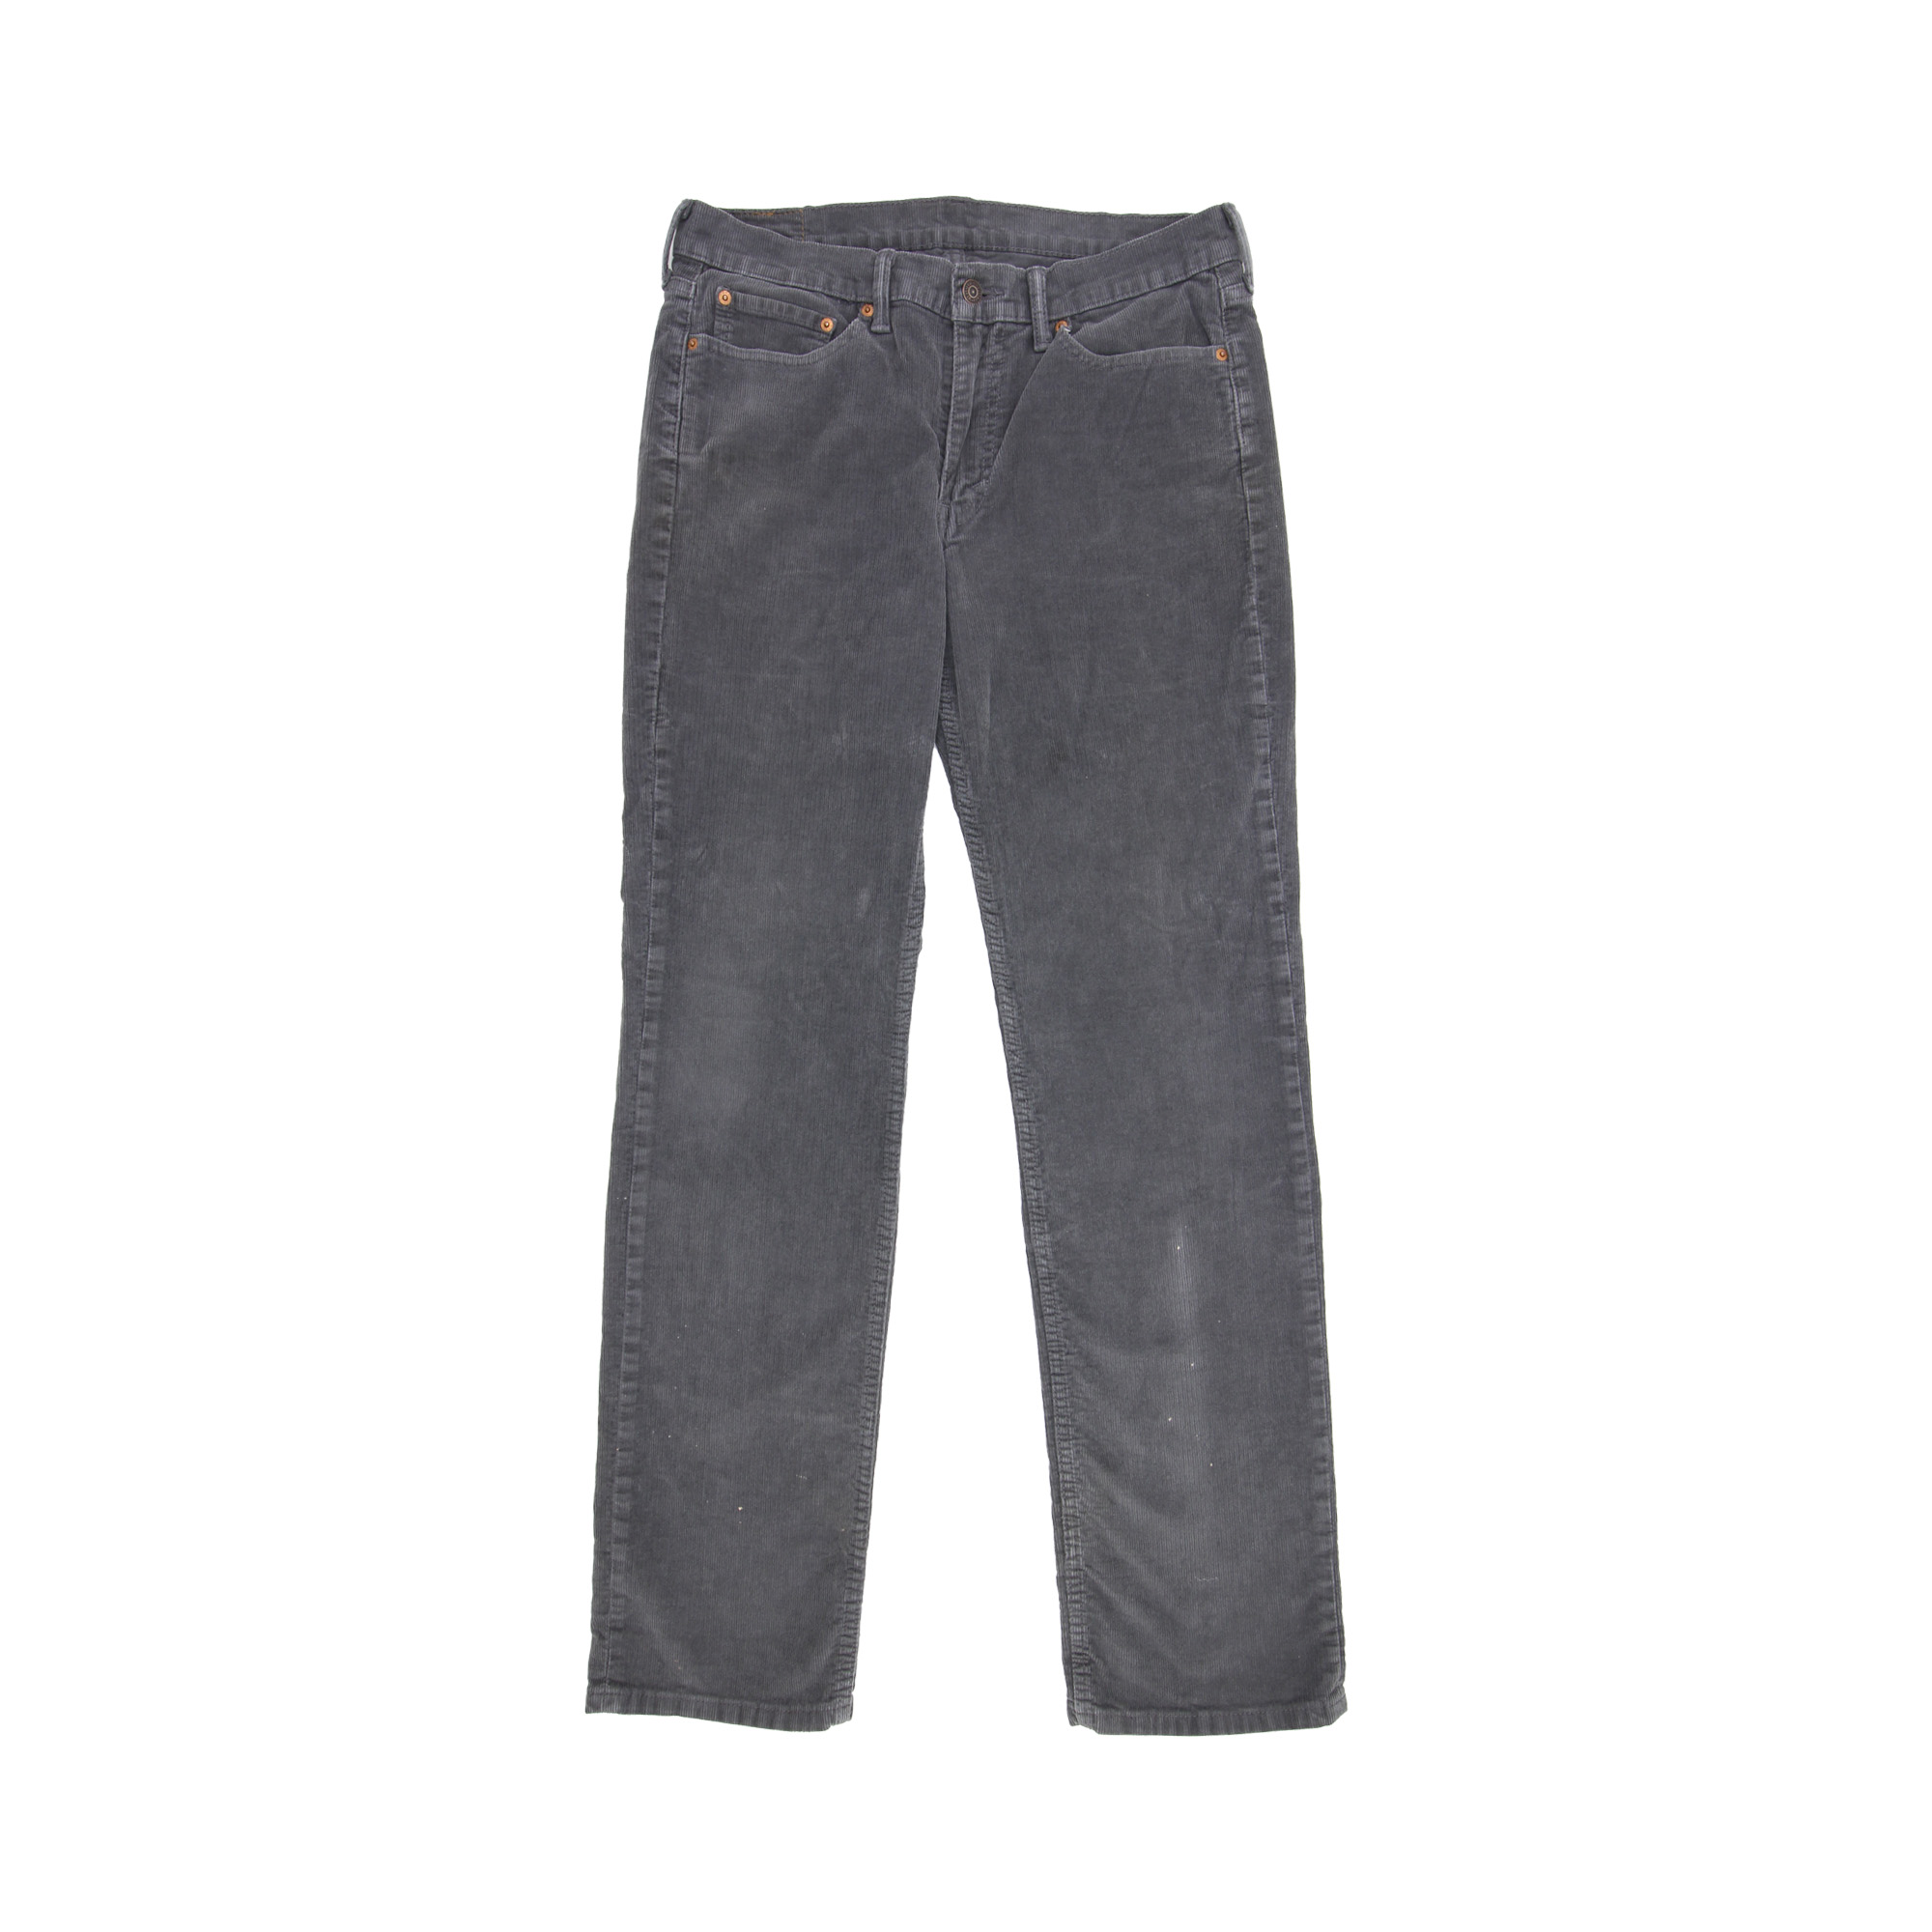 Levi's 514 Vintage Jeans -  W33 L34